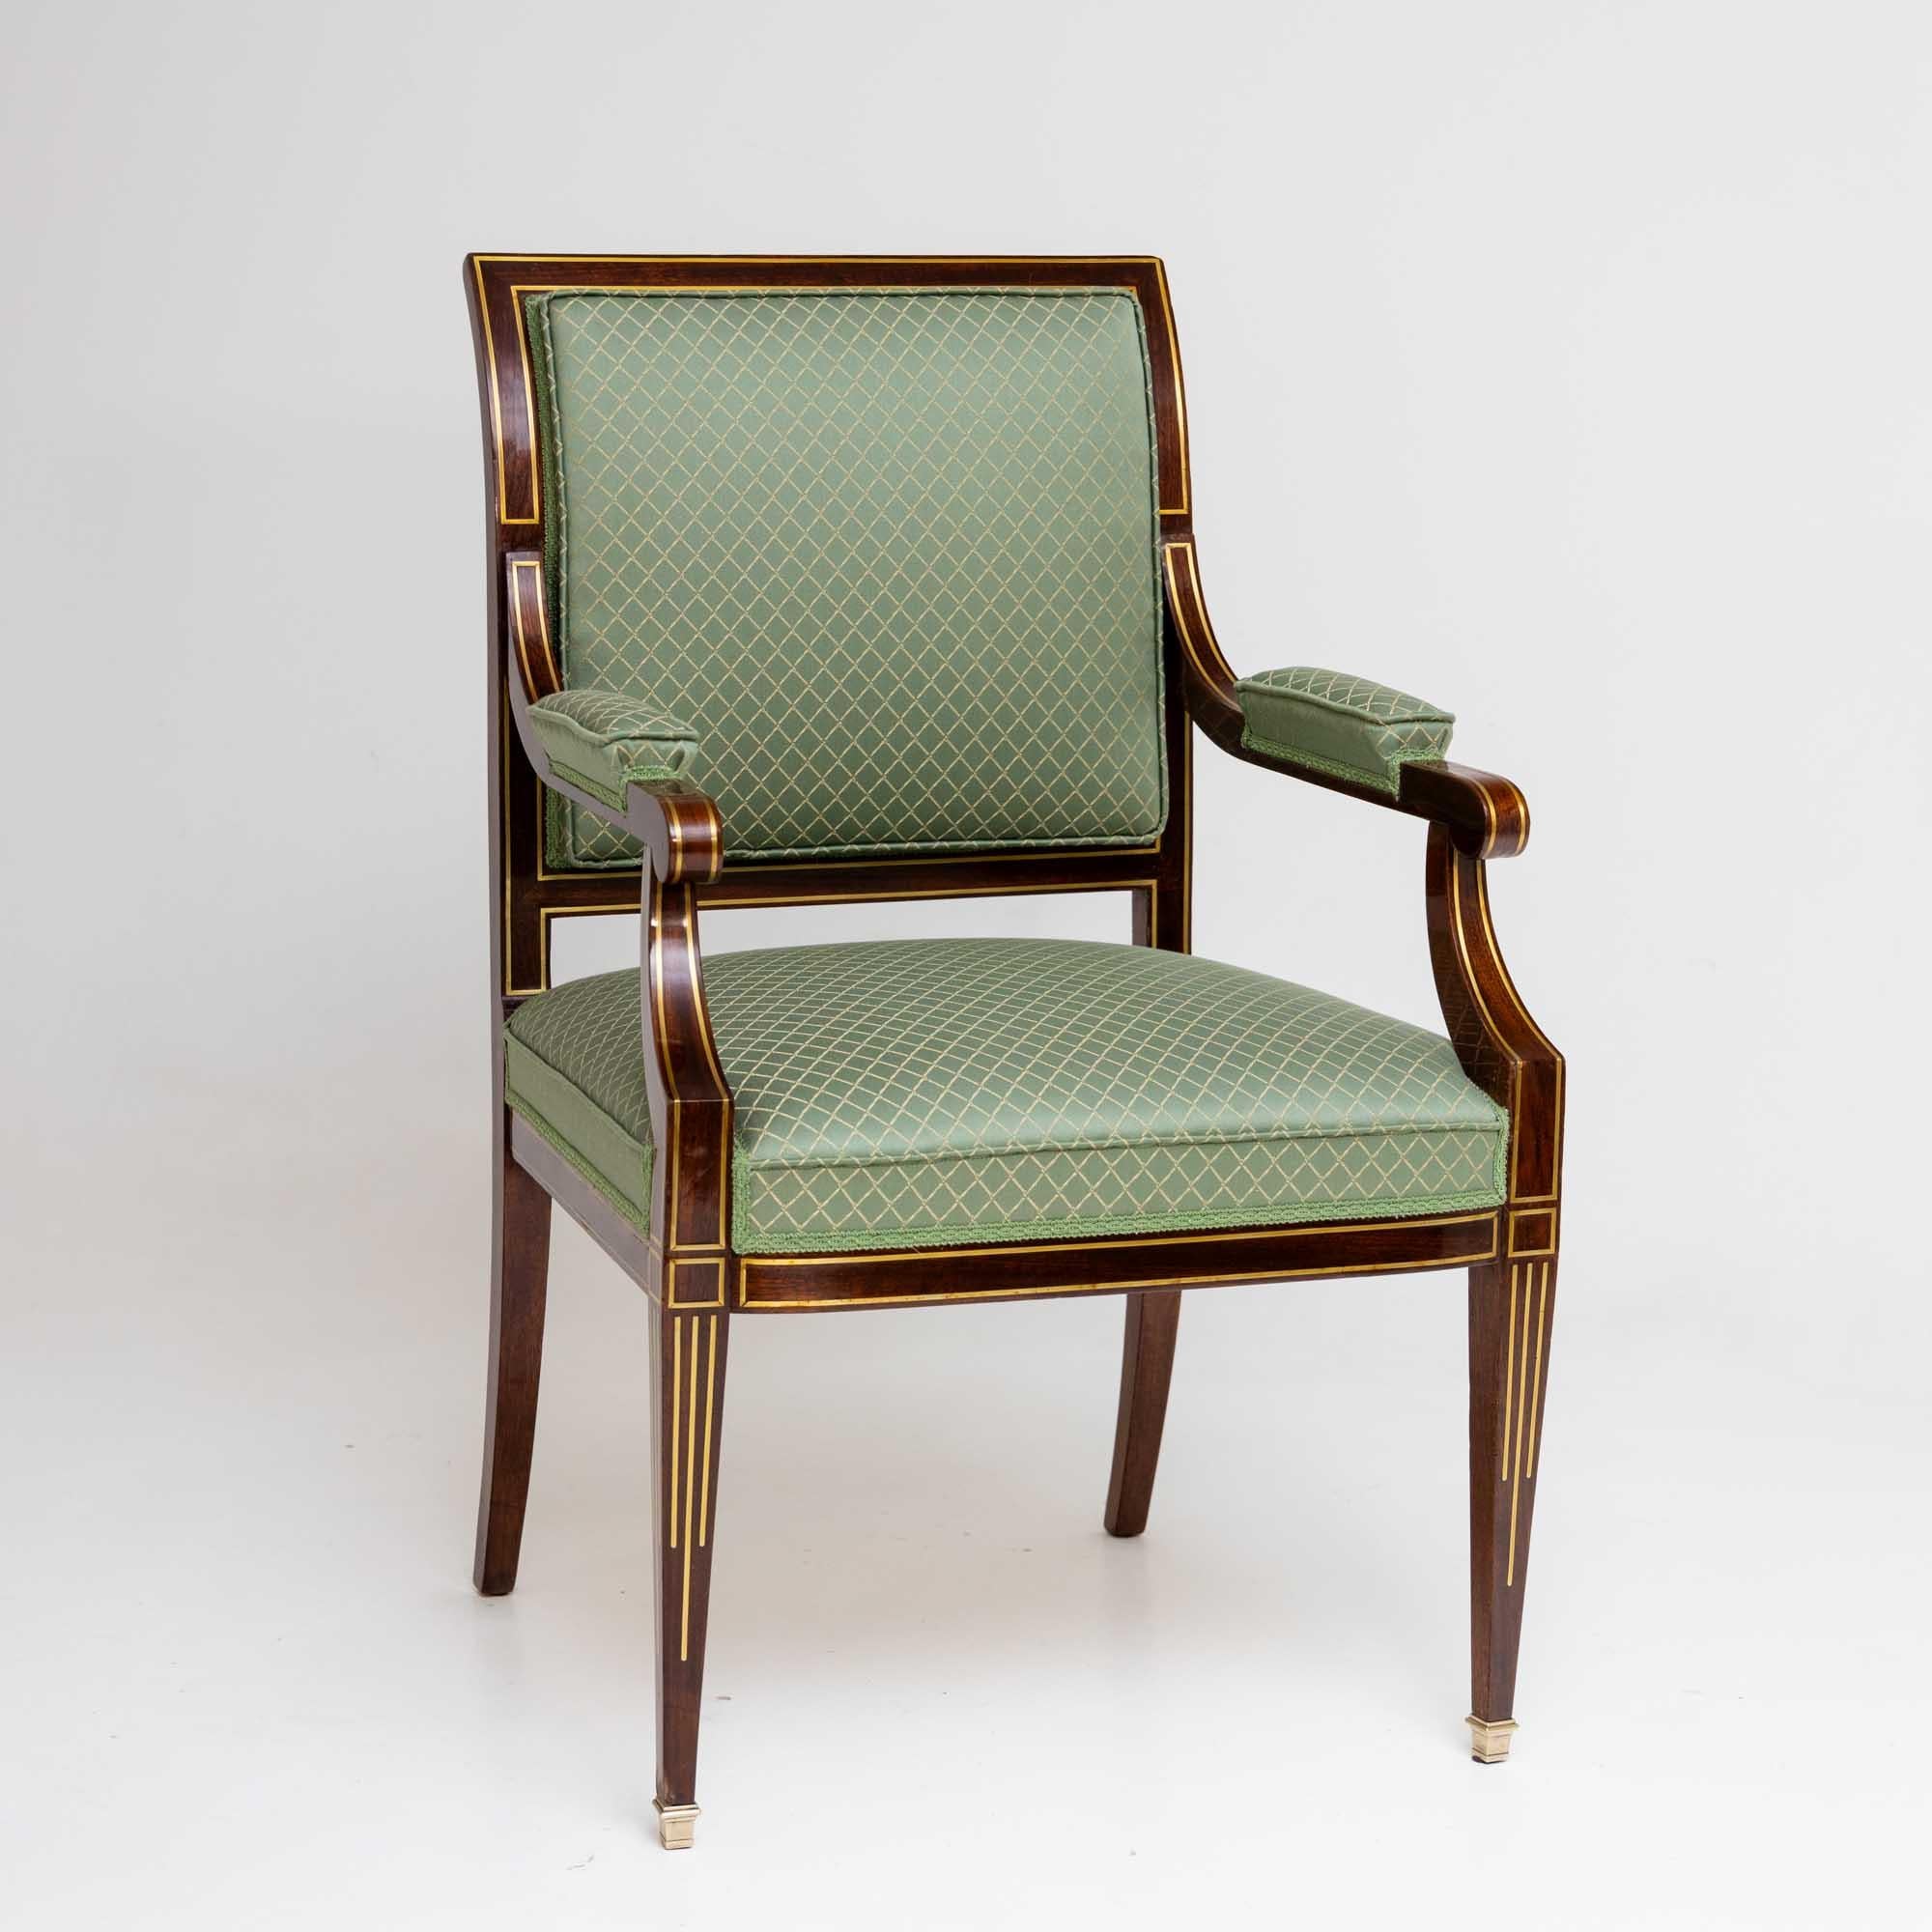 Sessel aus Mahagoni mit dekorativen Messingfadeneinlagen. Der Sessel steht auf eleganten, quadratischen, spitz zulaufenden Füßen mit Messing-Sabots. Der Stuhl wurde aufwändig mit einem hellgrünen Stoff mit goldenem Rautenmuster neu gepolstert. Wie